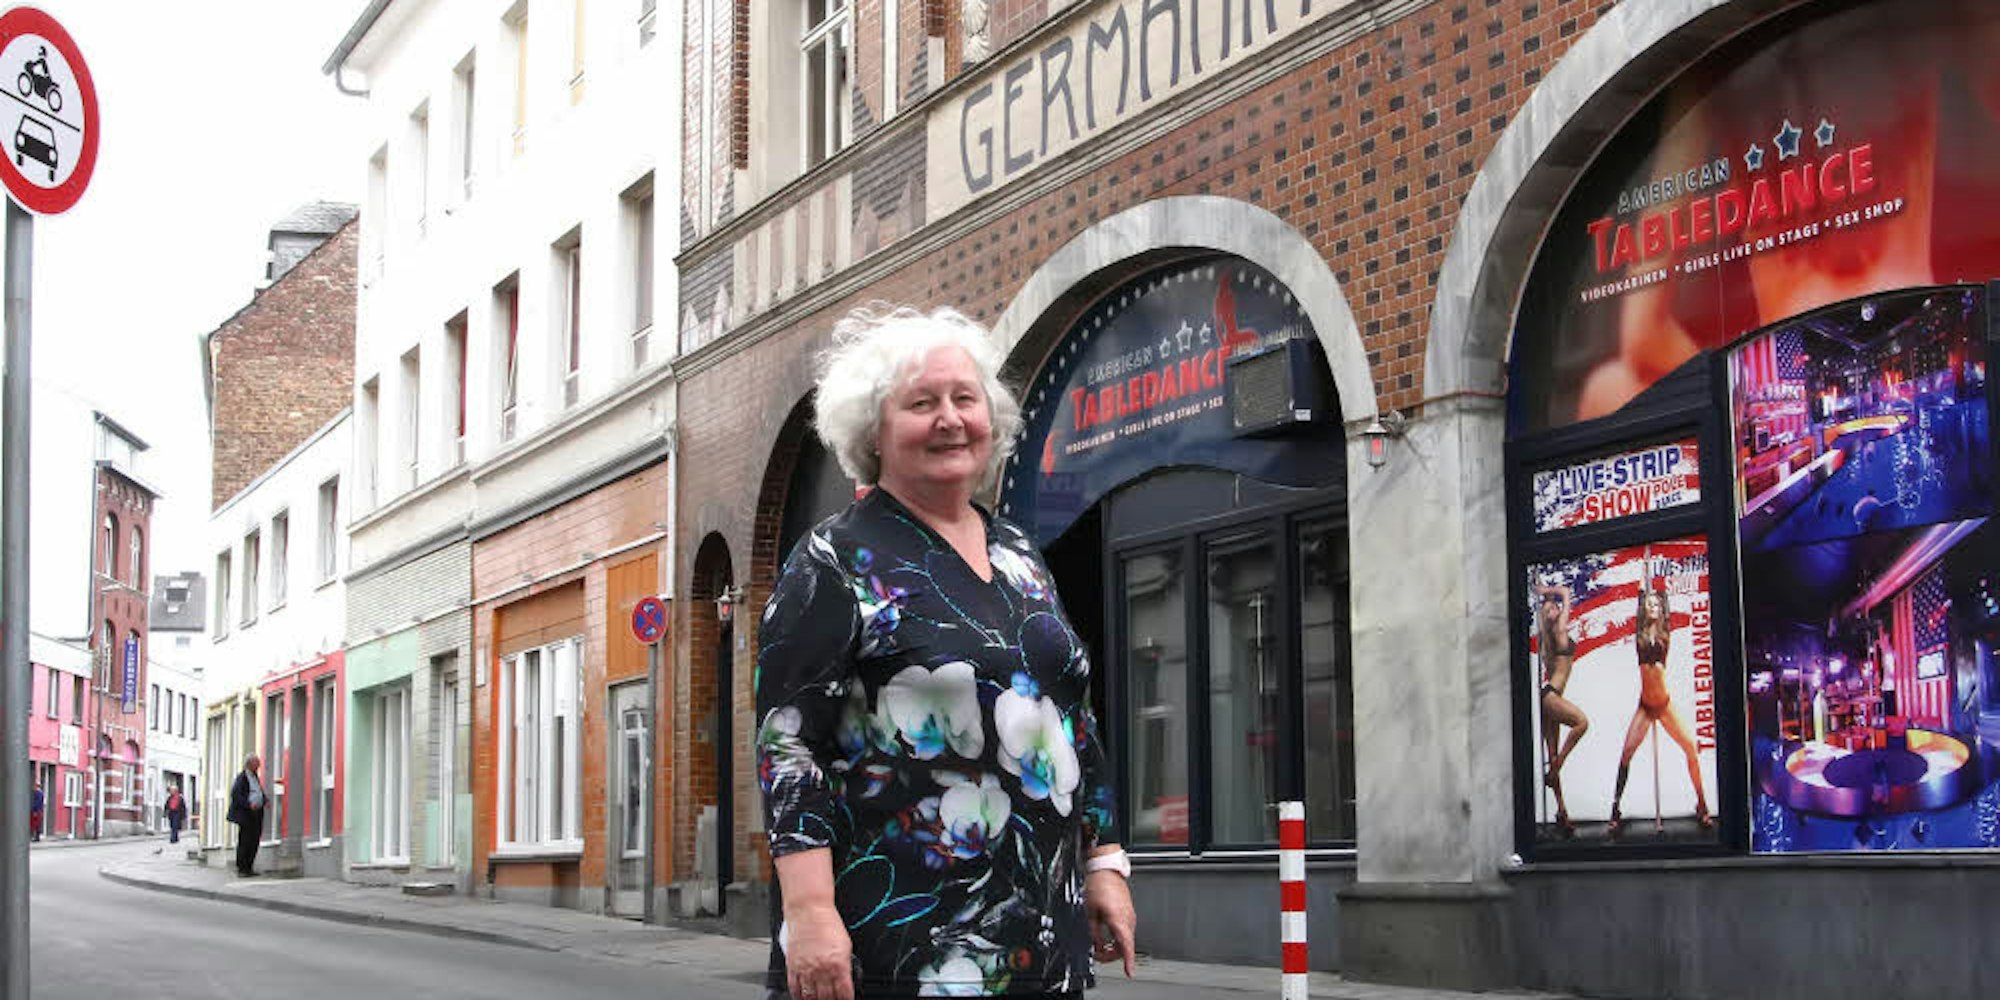 Bezirksbürgermeisterin Conradt, hier vor einem Bordell in der Aachener Antoniusstraße, fordert den Umbau des Viertels.